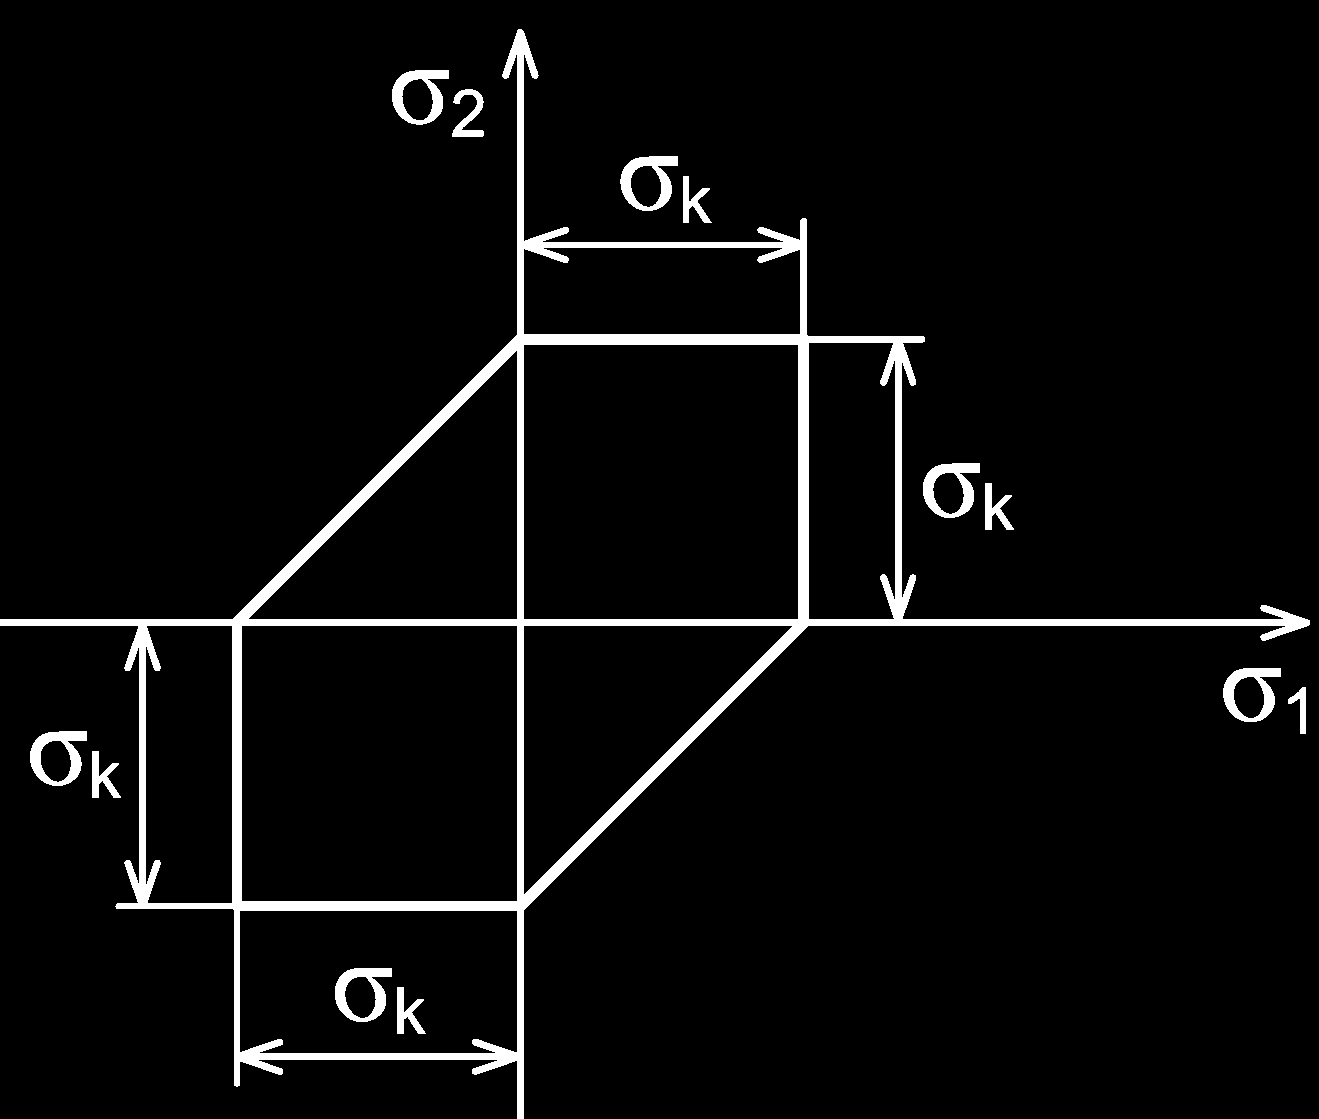 55) σ 3 σ 1 σ k σ 1 σ 3 σ k z nichž každá představuje rovinu a spolu vytvářejí povrch šestibokého hranolu s osou v symetrále prostoru σ 1 = σ 2 = σ 3, viz obrázek